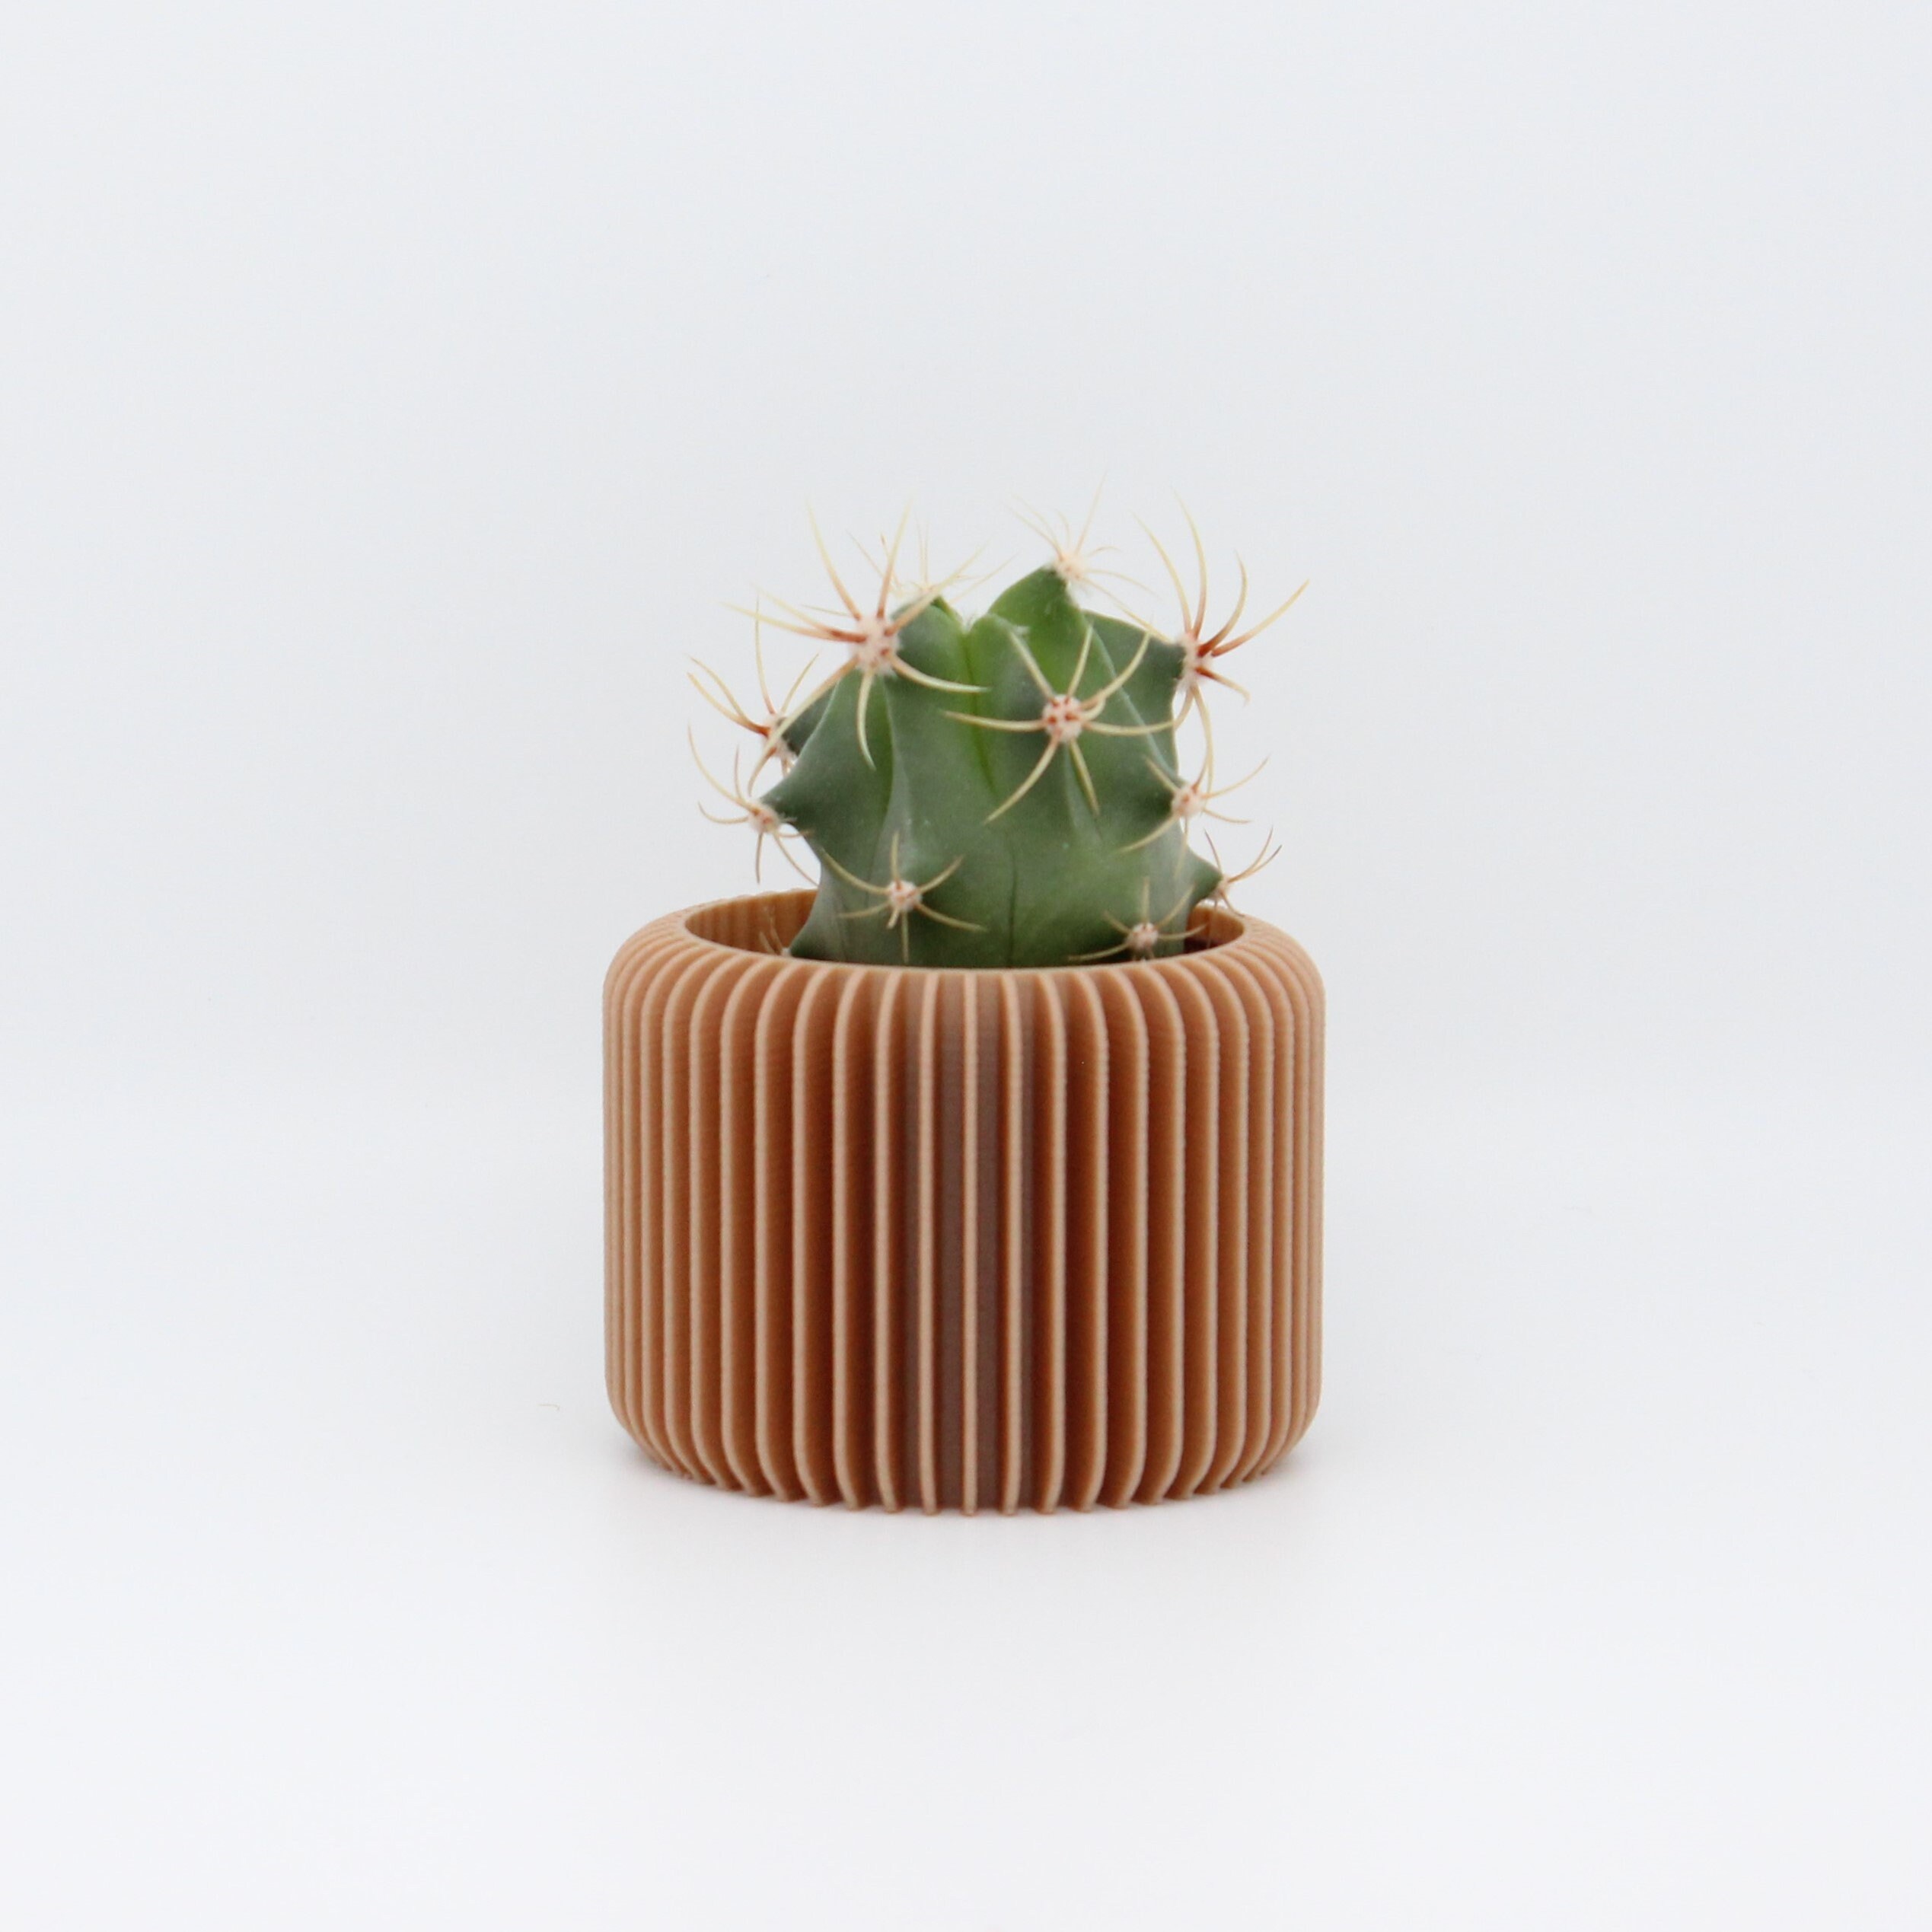 Cadeaux invités “Ma petite plante” - Bricolage - Le Blog - Bonne